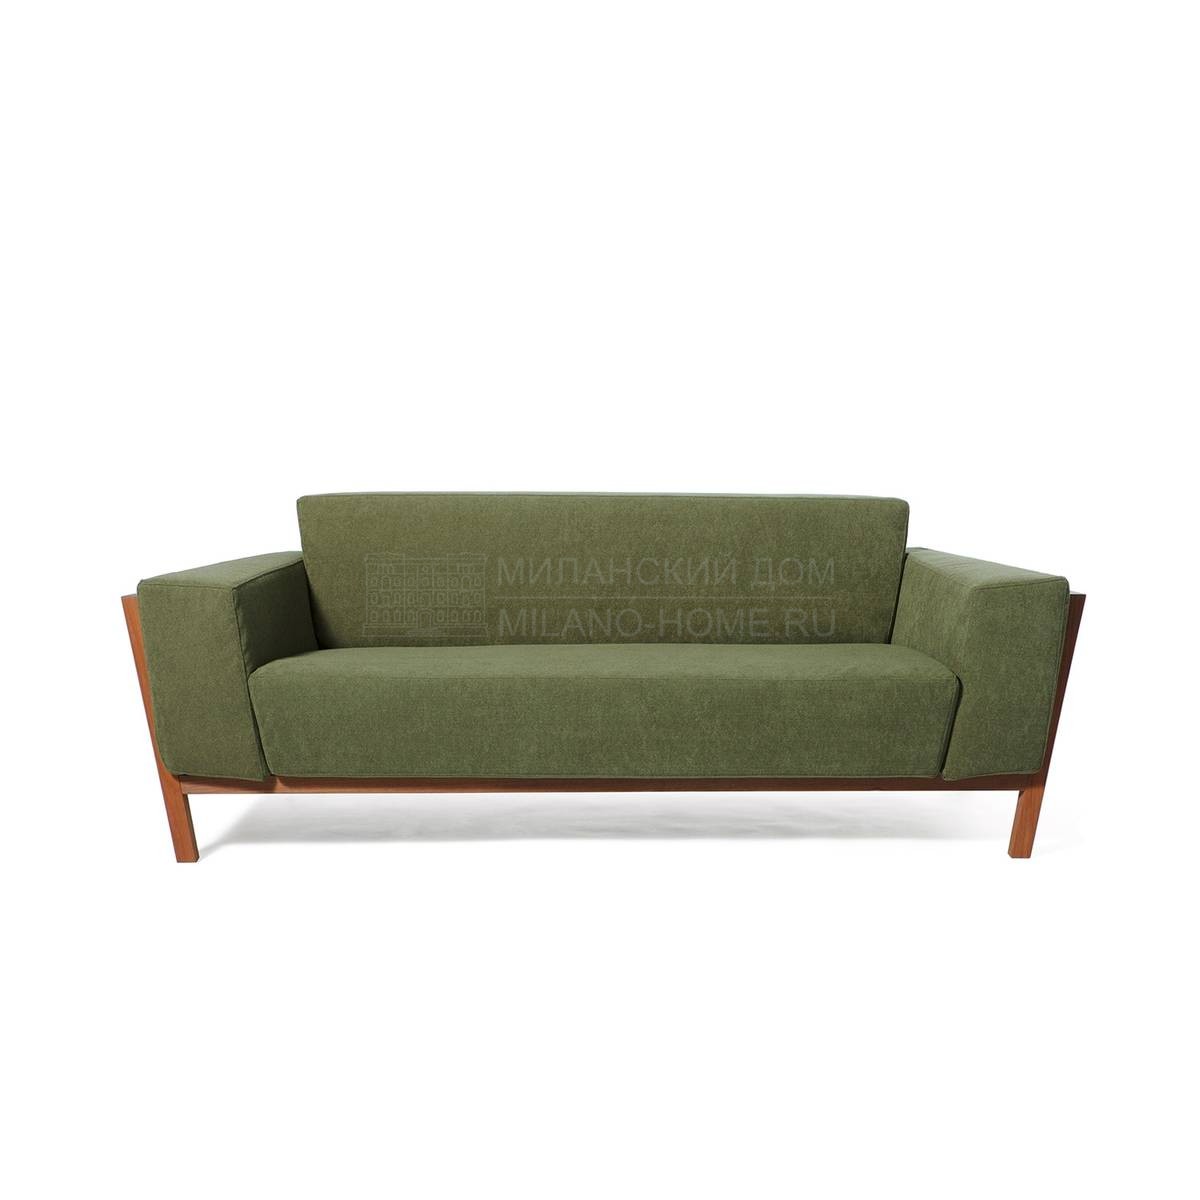 Прямой диван Paddock sofa из Италии фабрики DOMODINAMICA